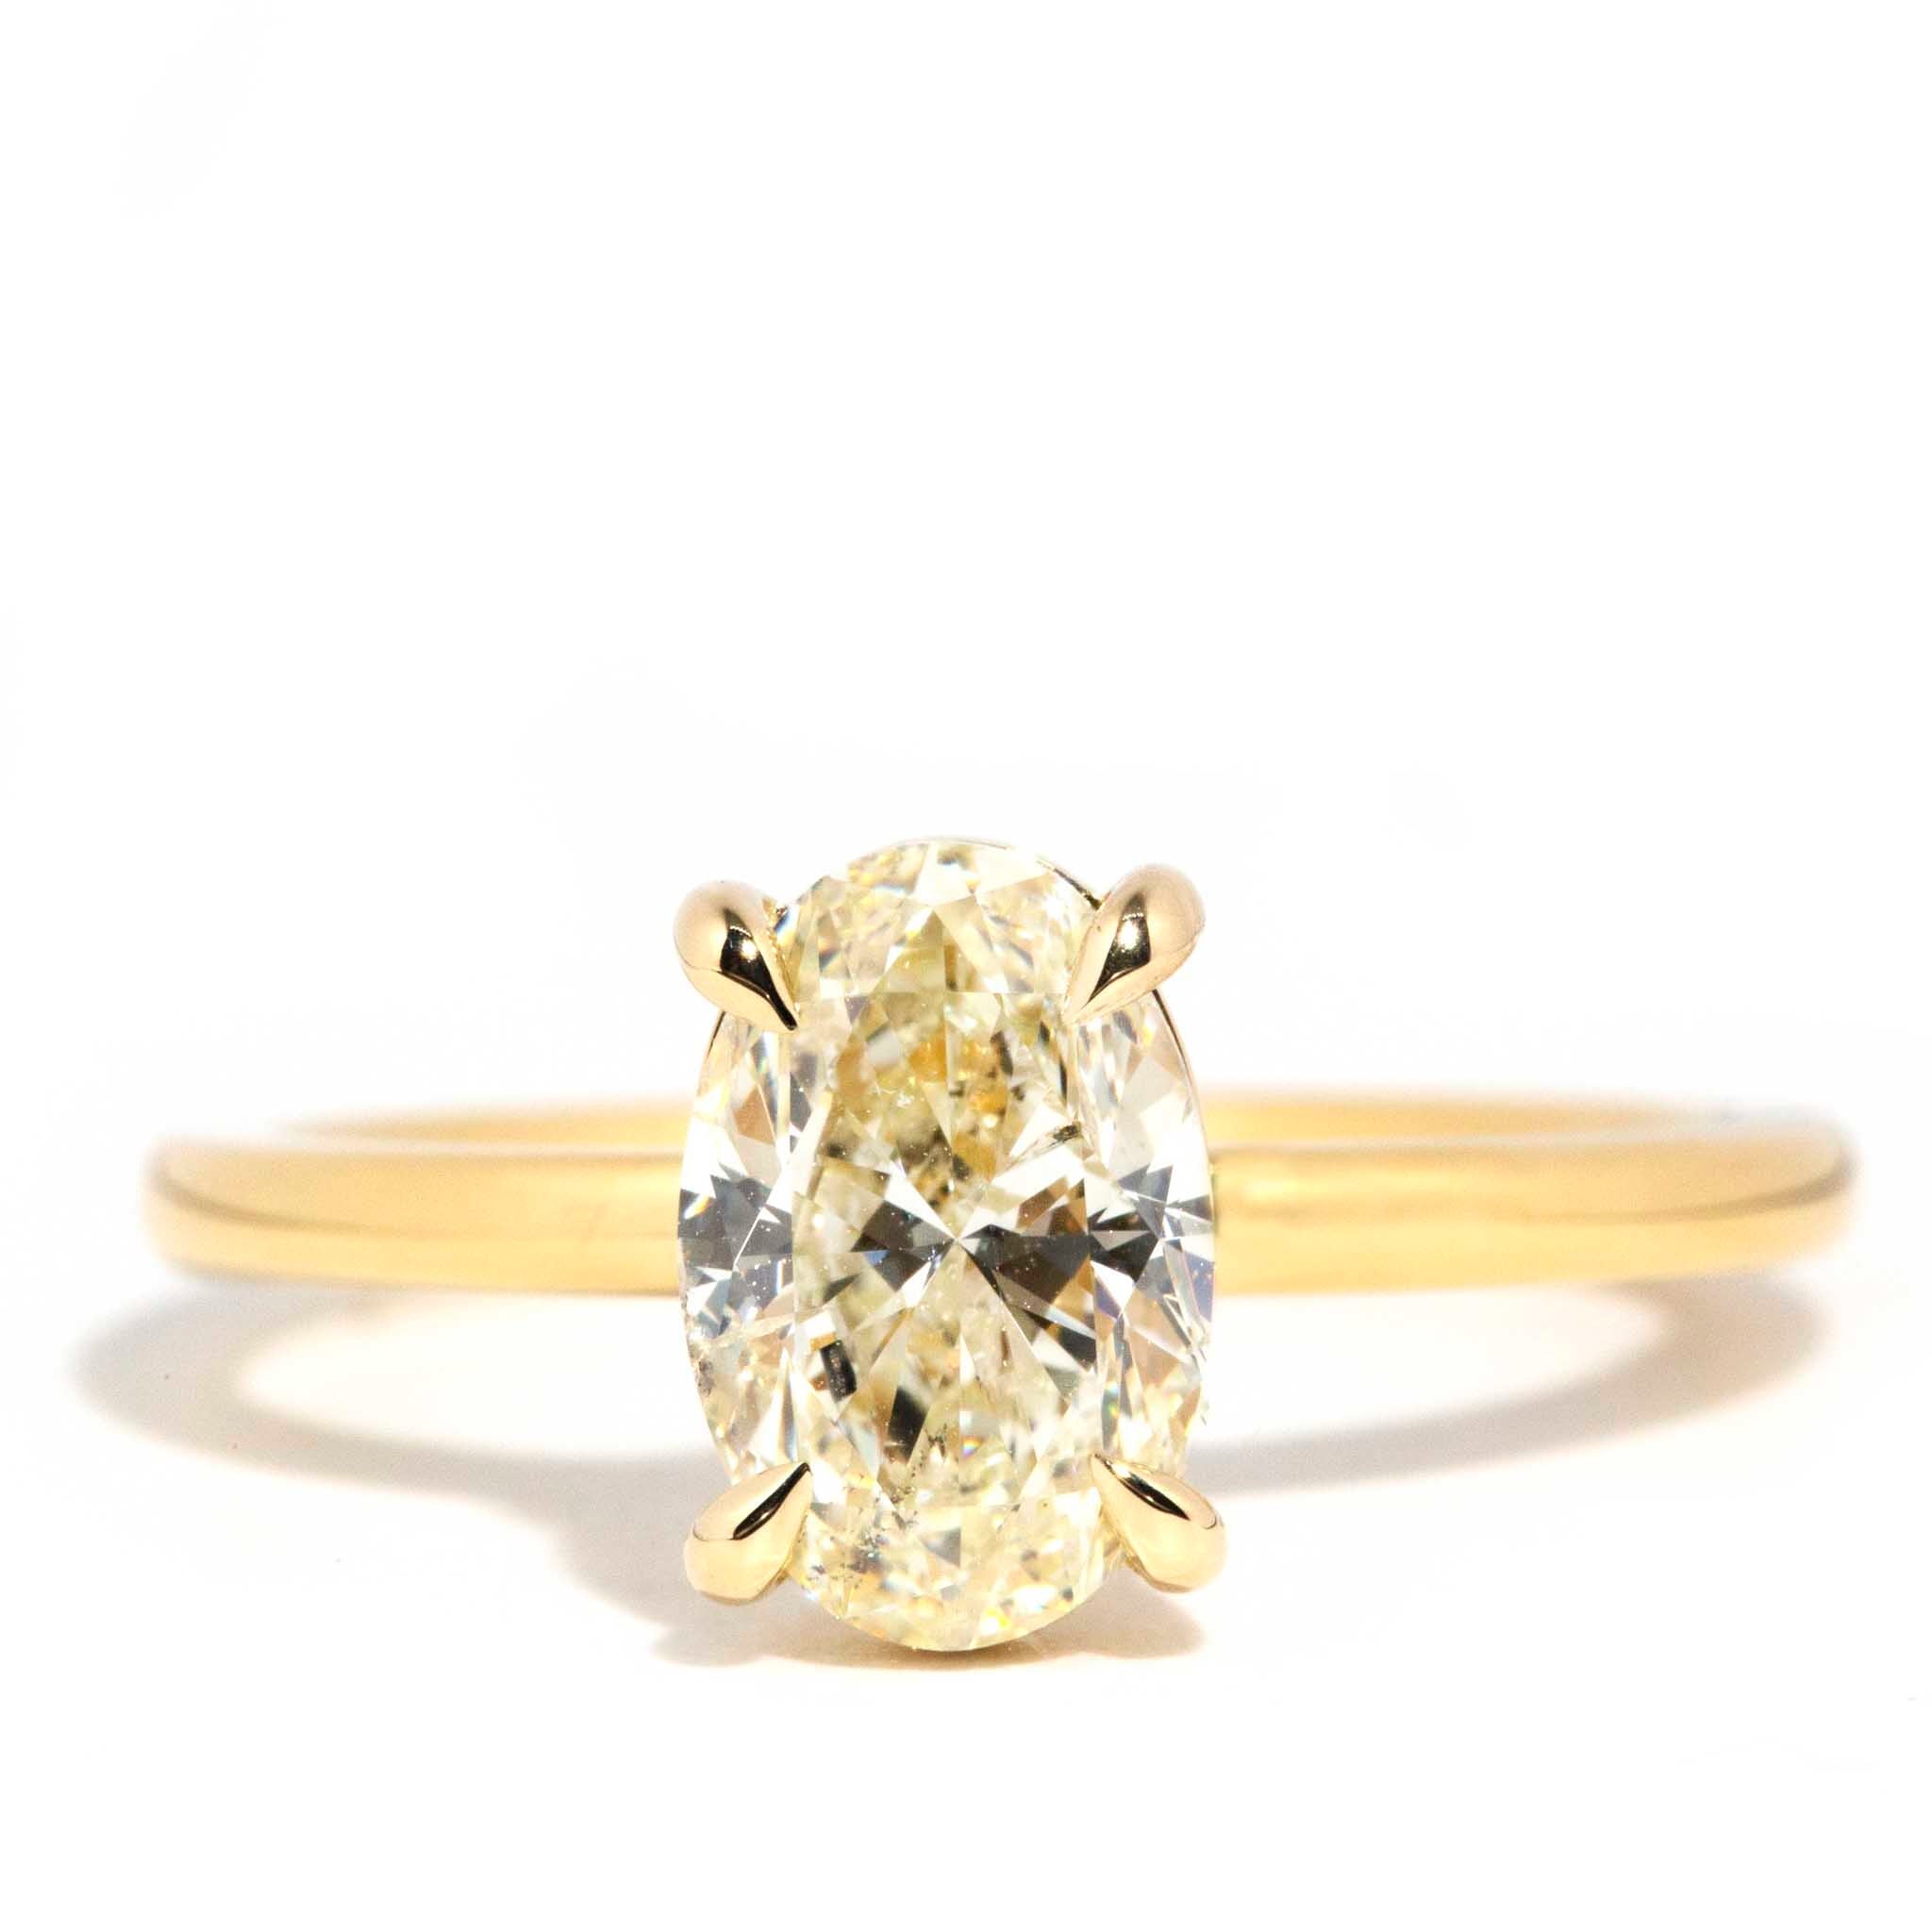 Dana 1.53 Carat Oval Certified Diamond Solitaire Ring Rings Imperial Jewellery Imperial Jewellery - Hamilton 